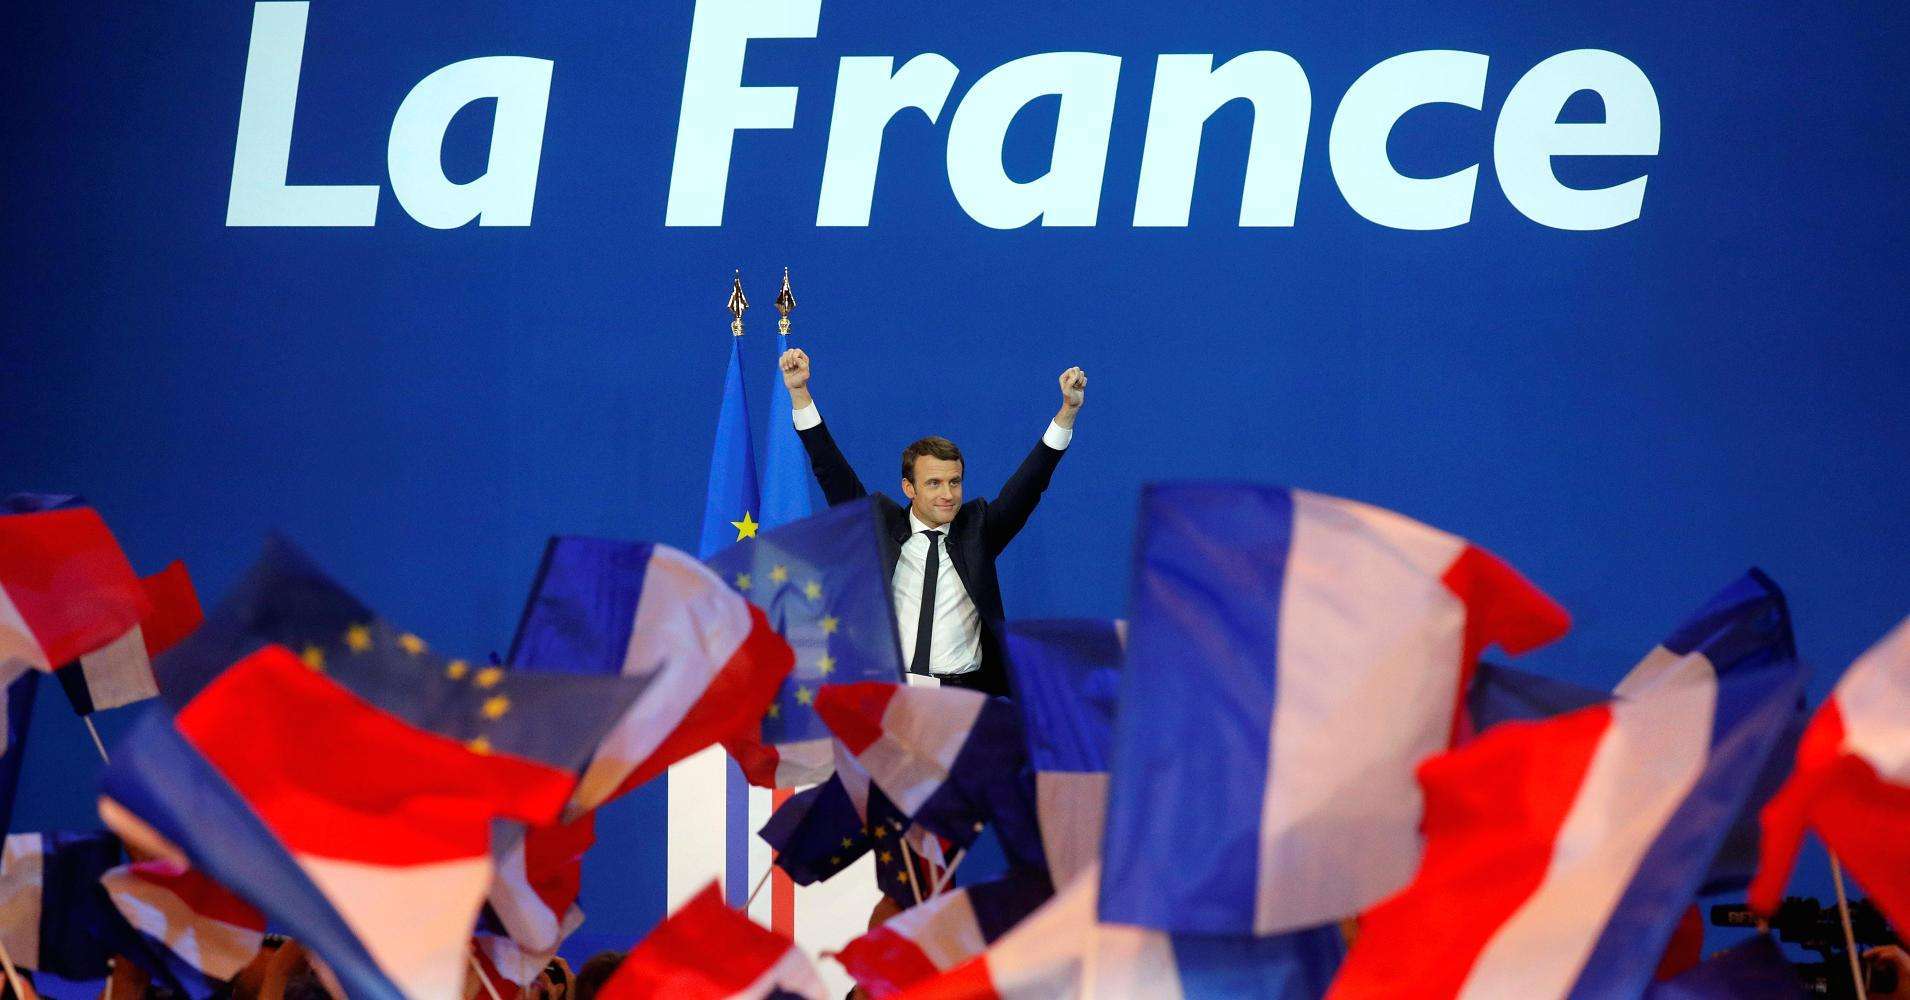 马克龙赢得大选成为法国史上最年轻总统